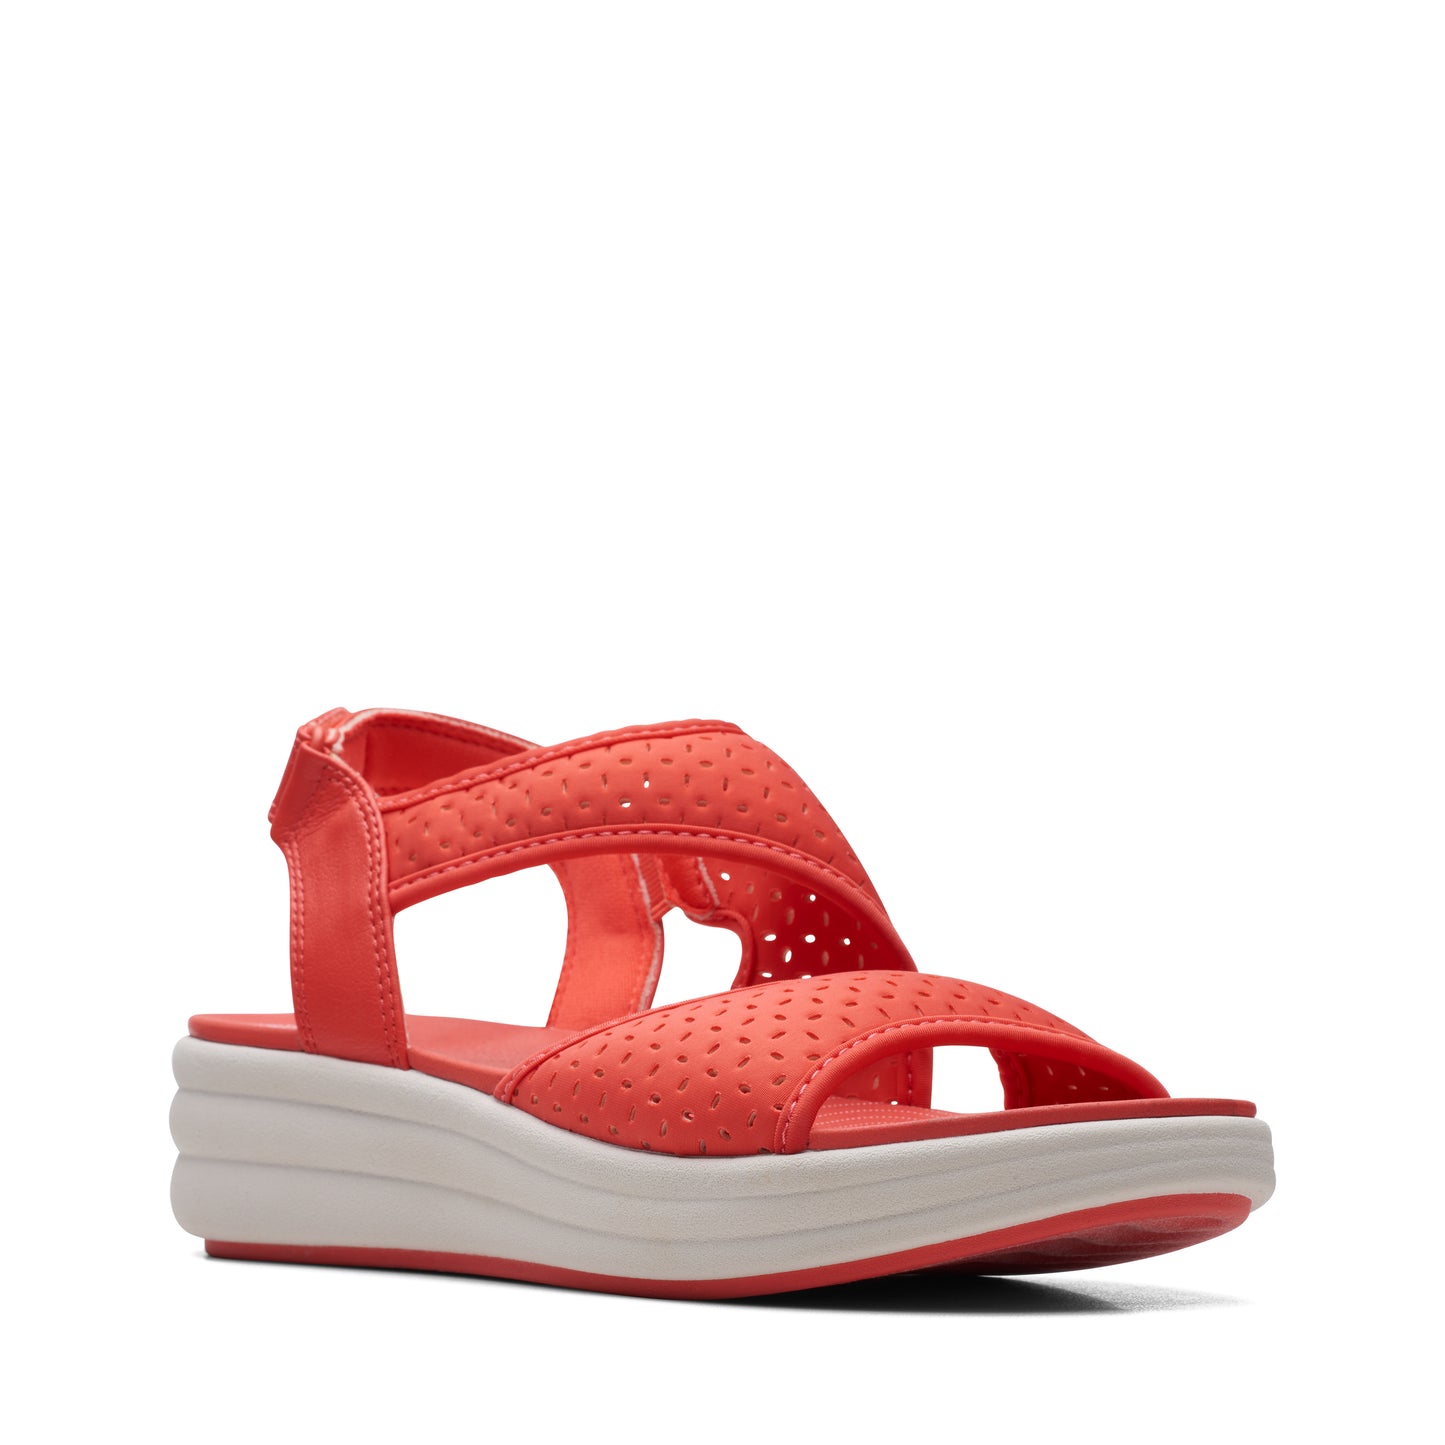 Zapato De Cuña De La Marca Clarks Para Mujer Modelo Drift Fern GrenadineEn Color Rojo